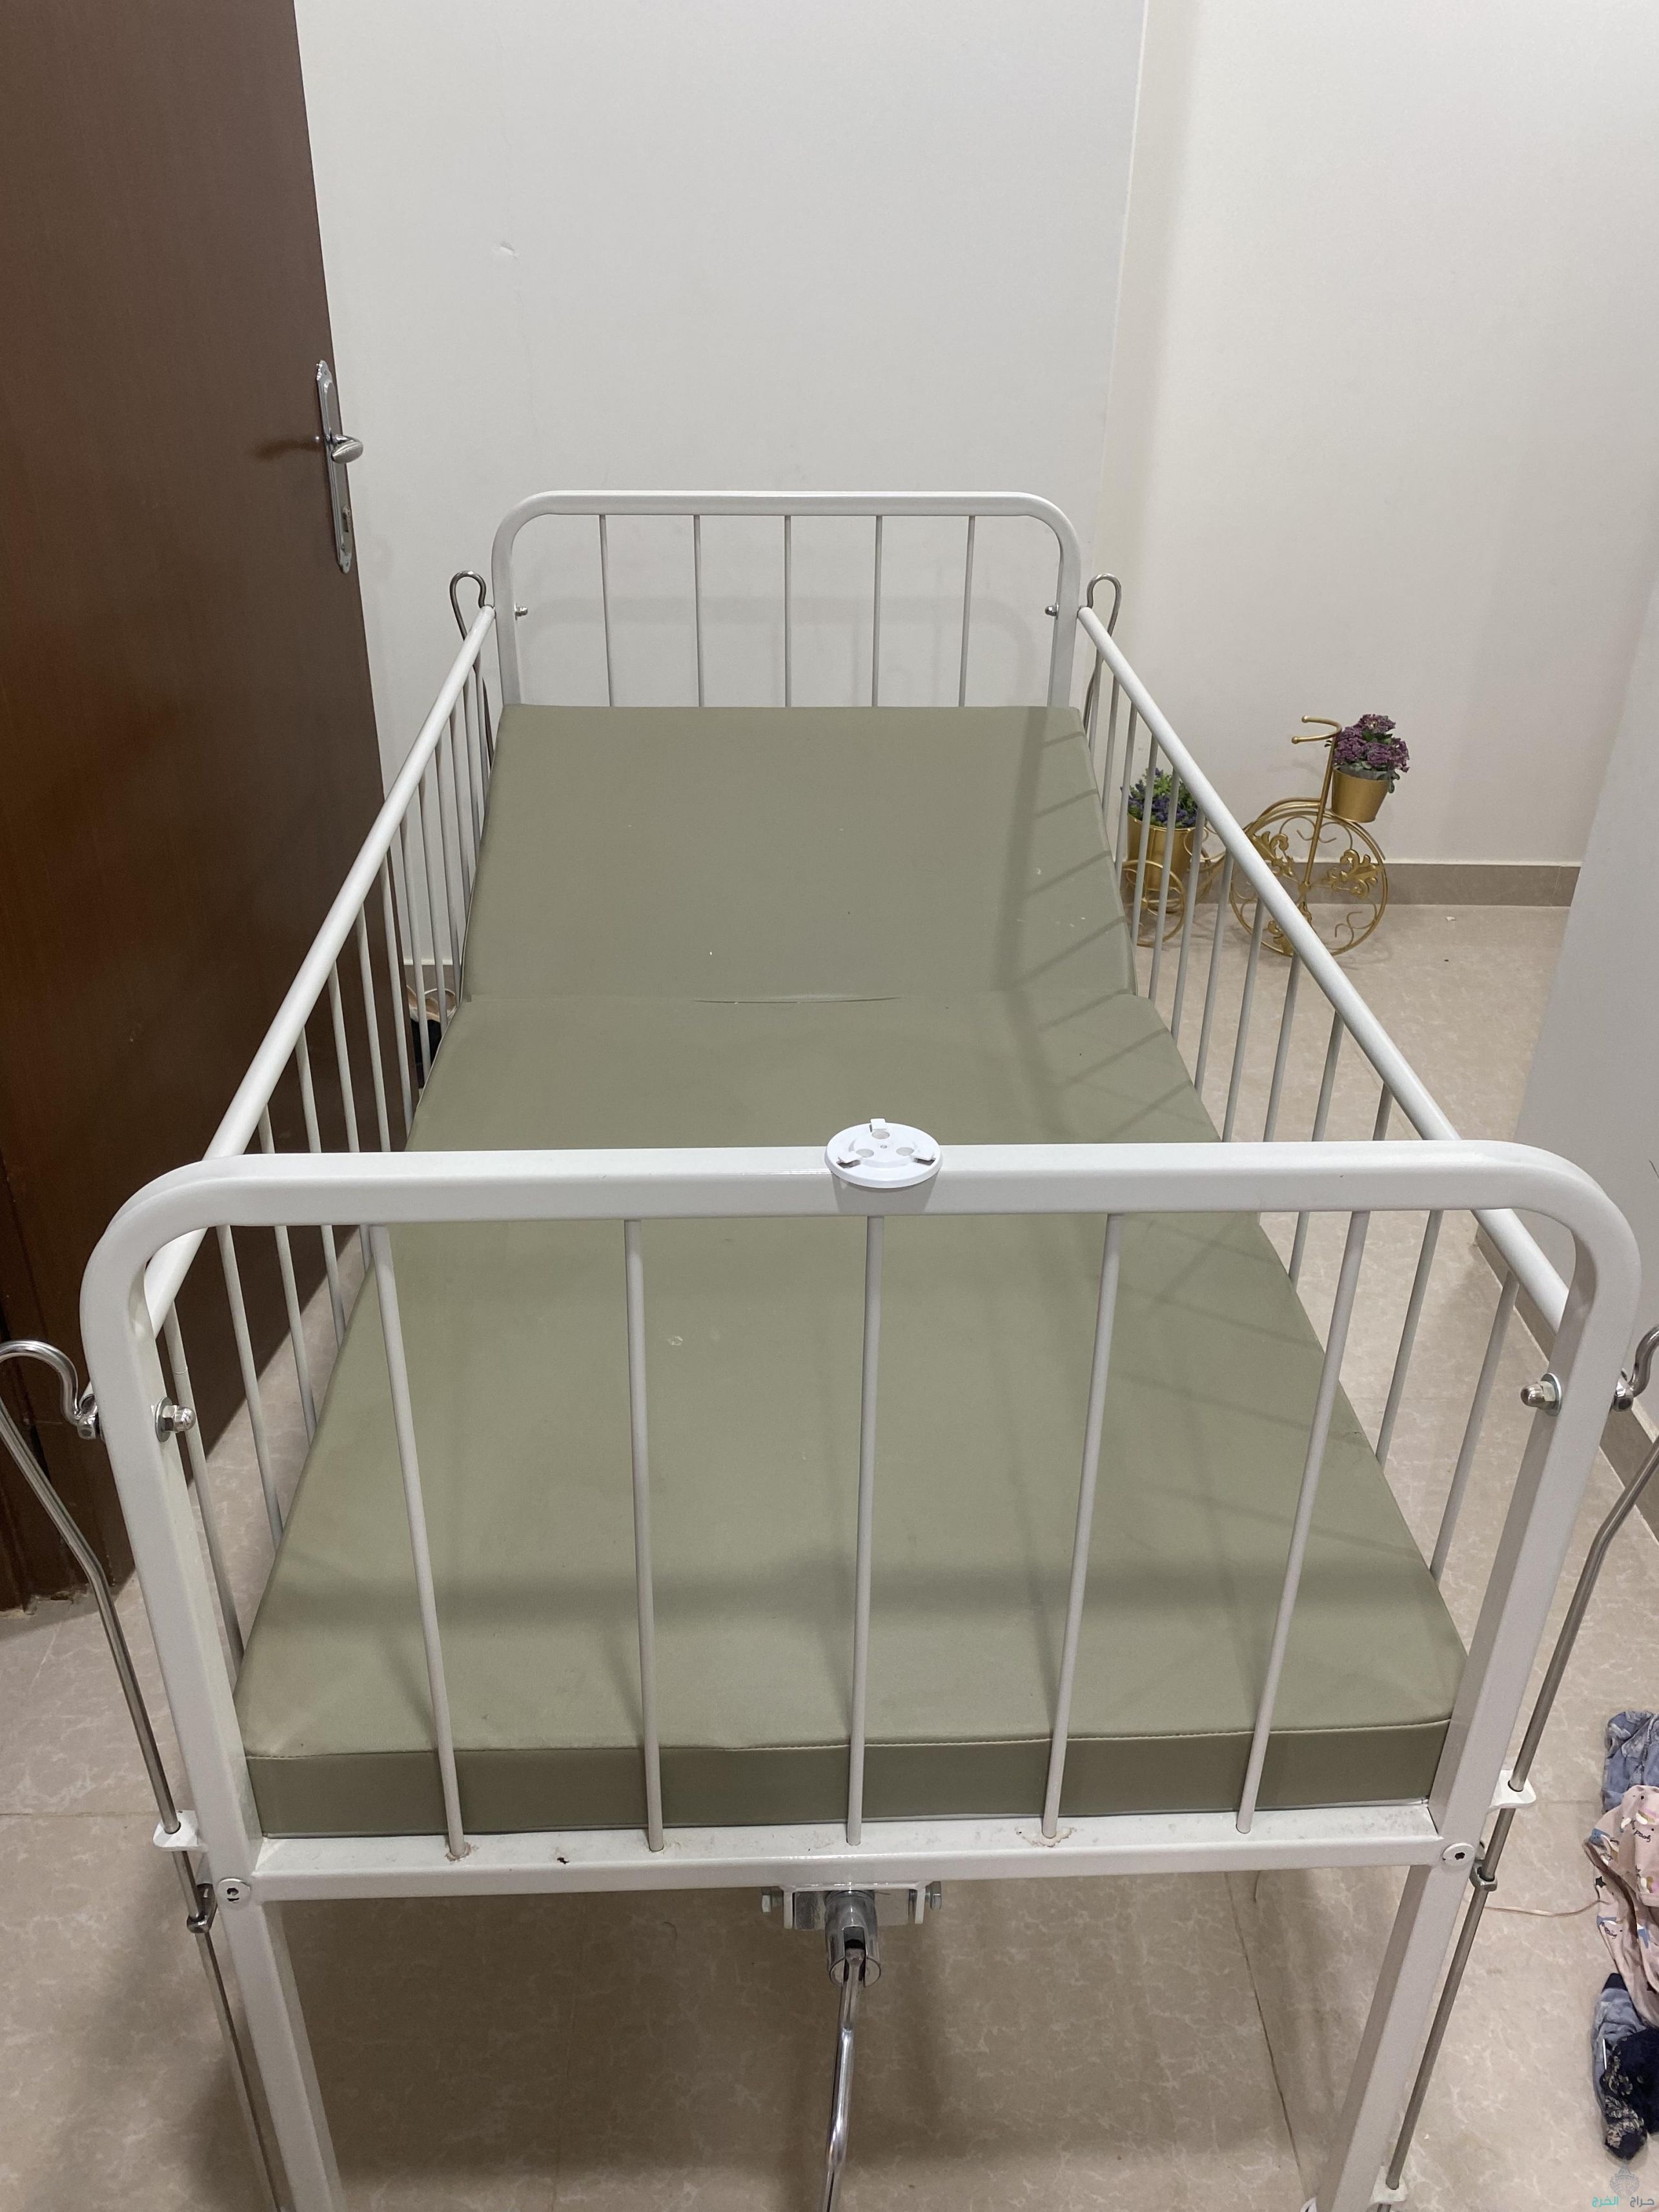 سرير اطفال احتياجات  خاصة ومروش 